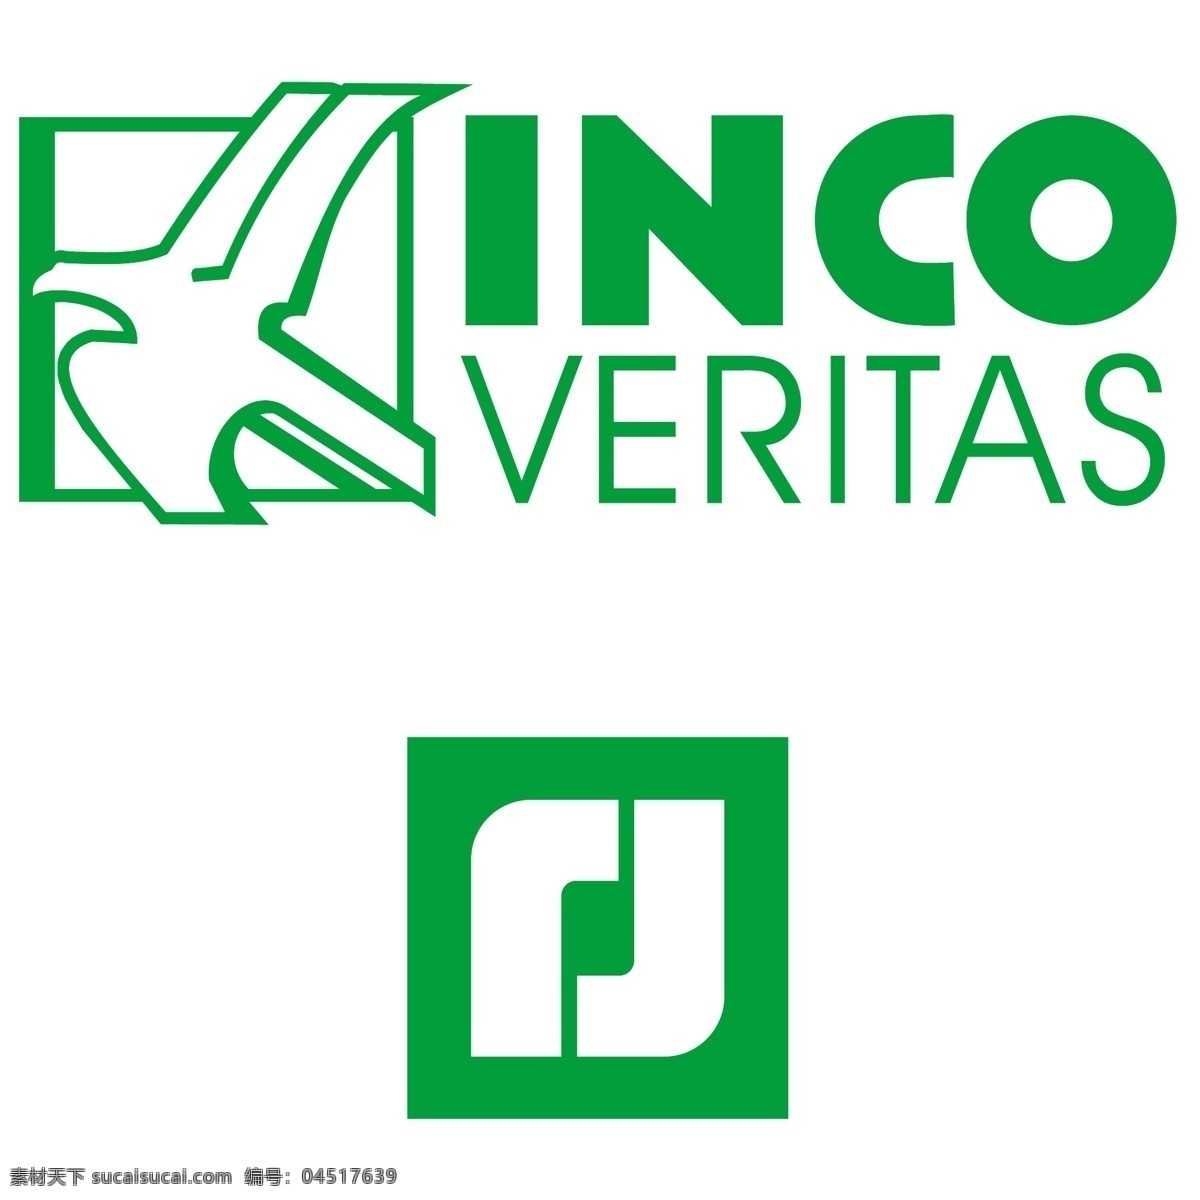 国际 镍 业 公司 自由 贸易公司 标识 veritas psd源文件 logo设计